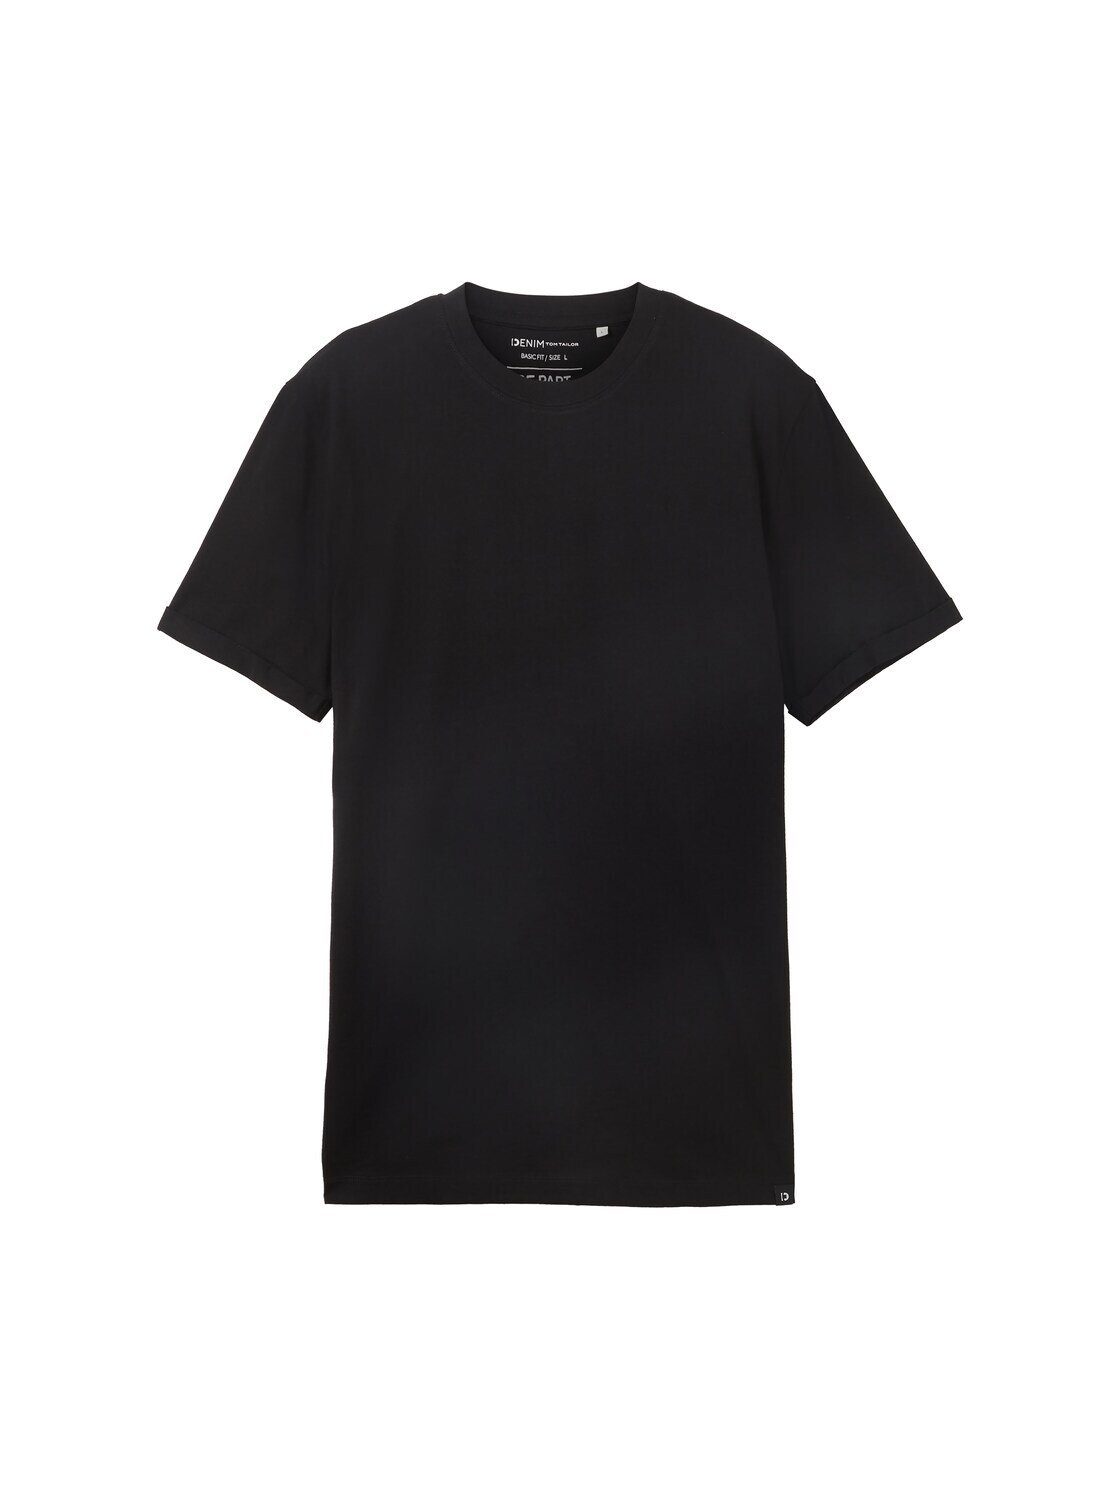 TOM TAILOR Black T-Shirt Basic T-Shirt Denim